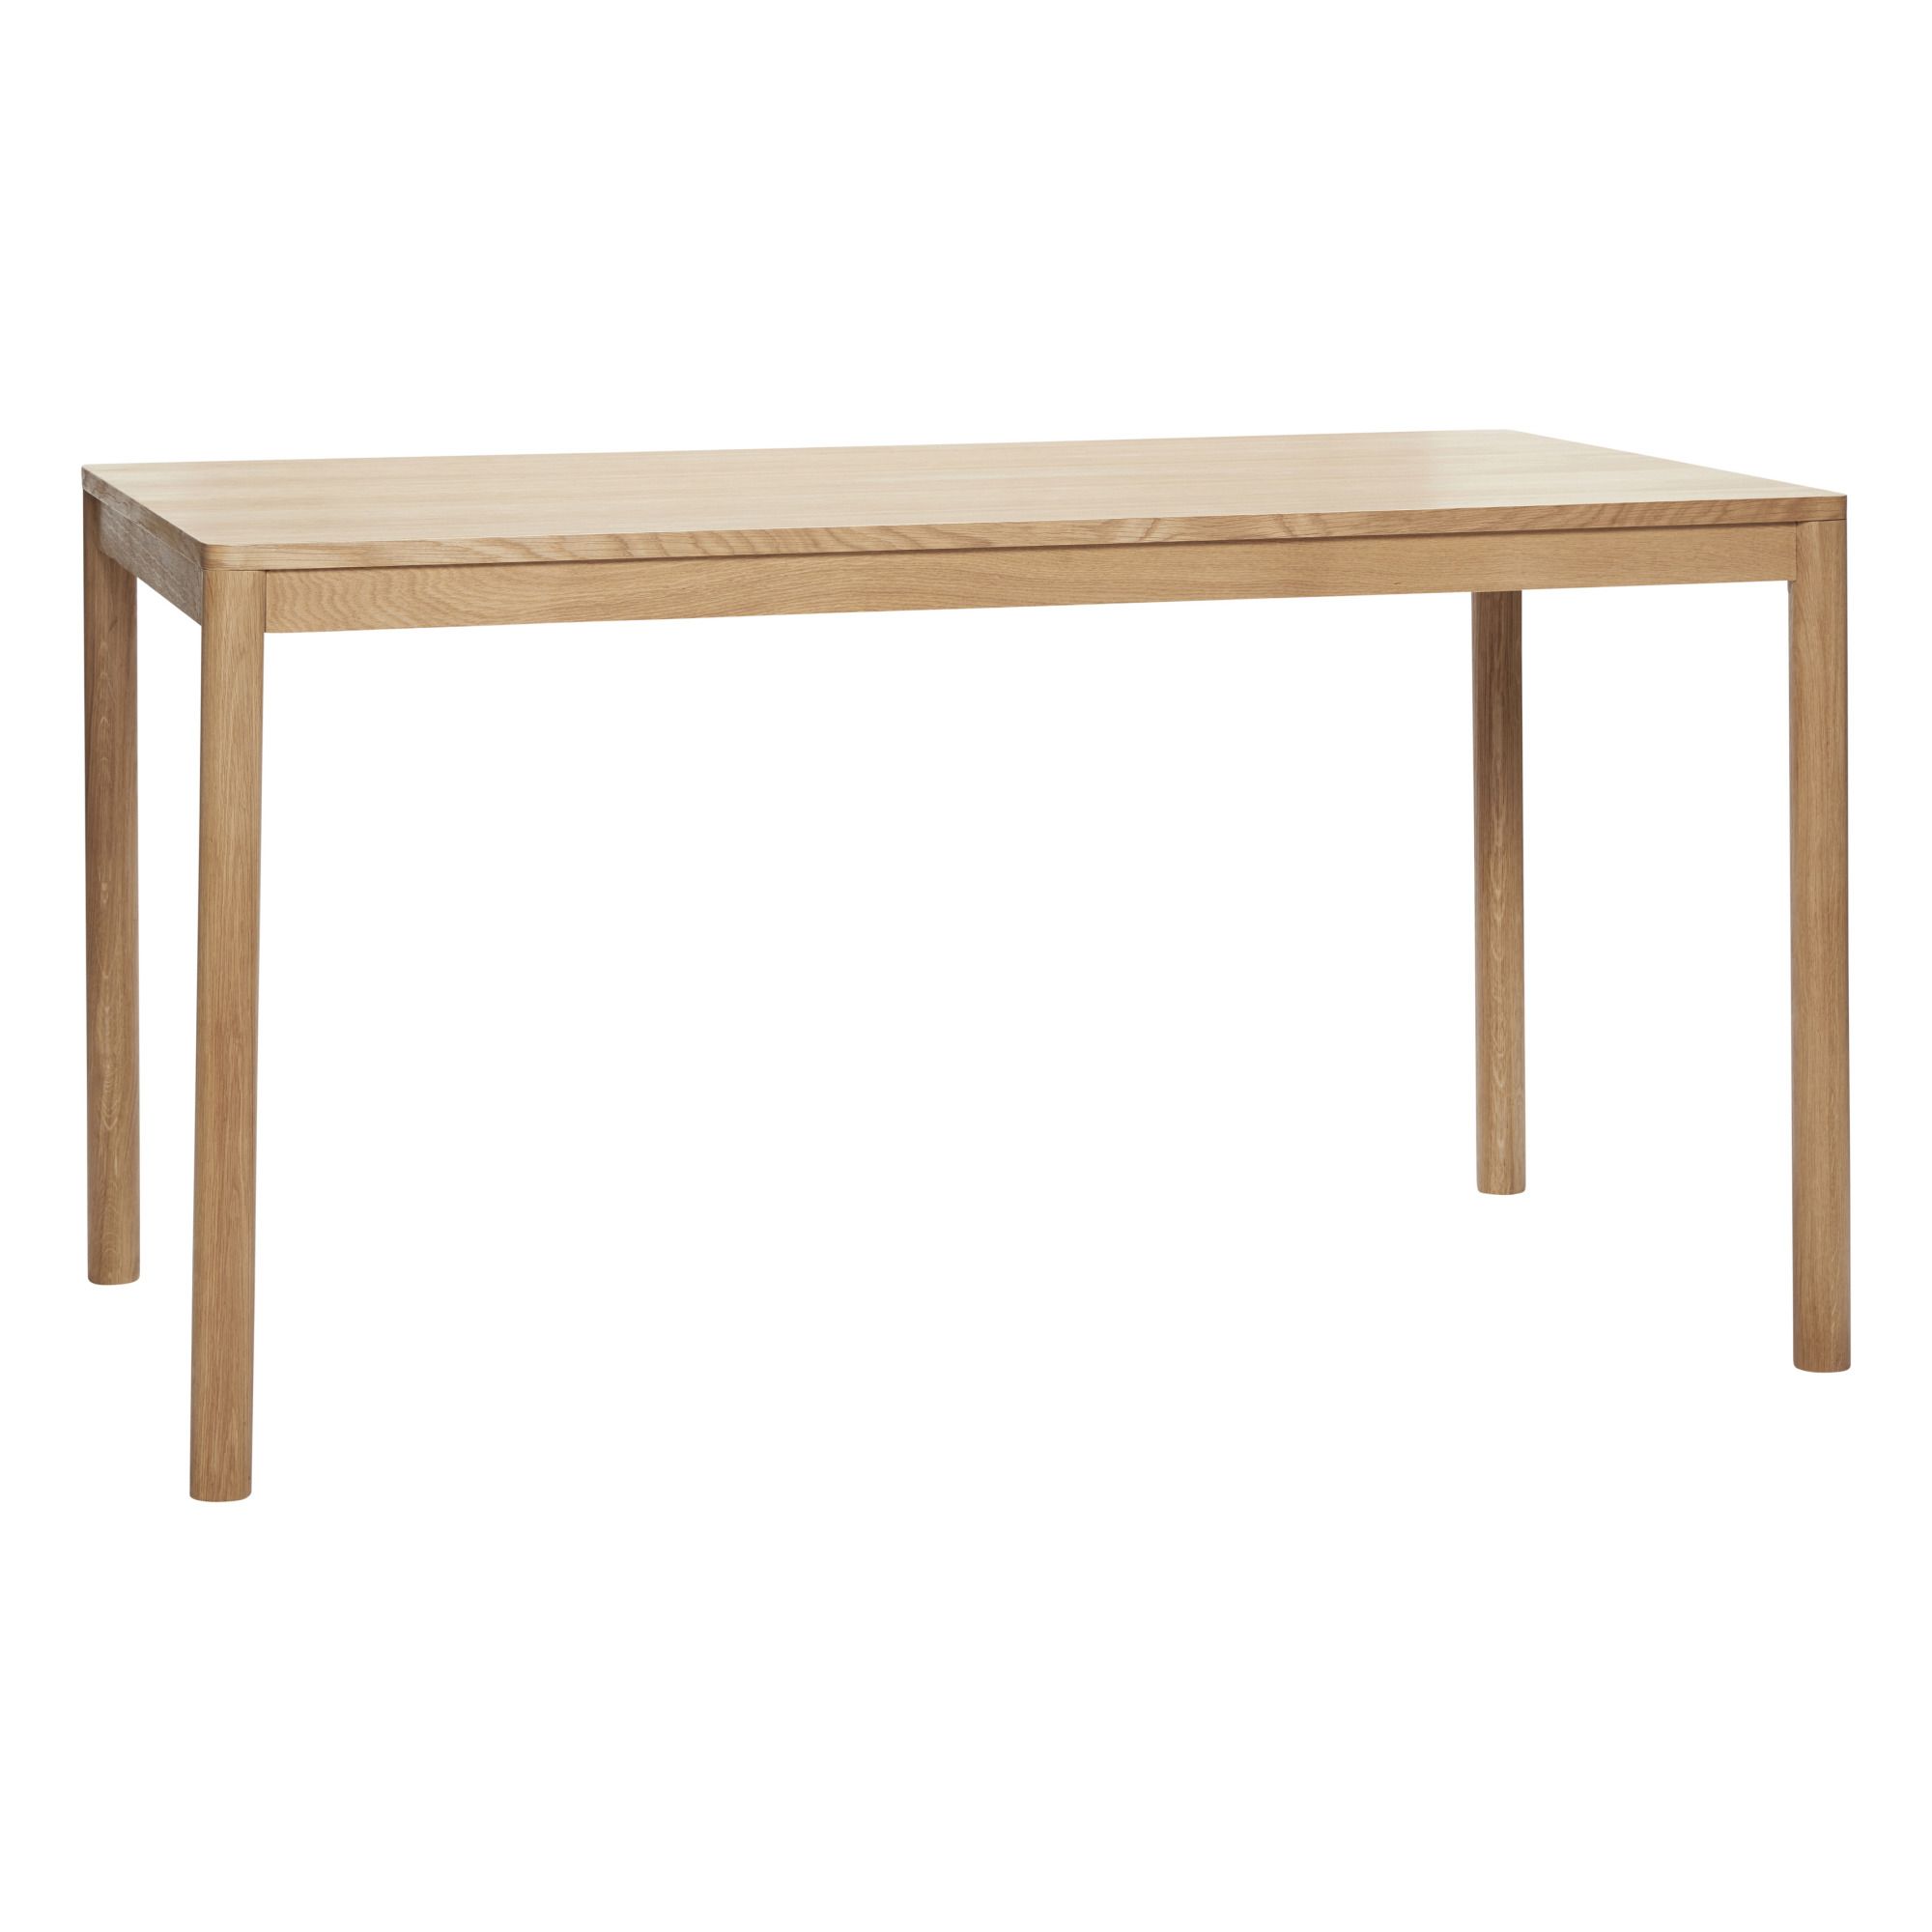 Hubsch - Table en chêne FSC - 140x80 cm - Naturel